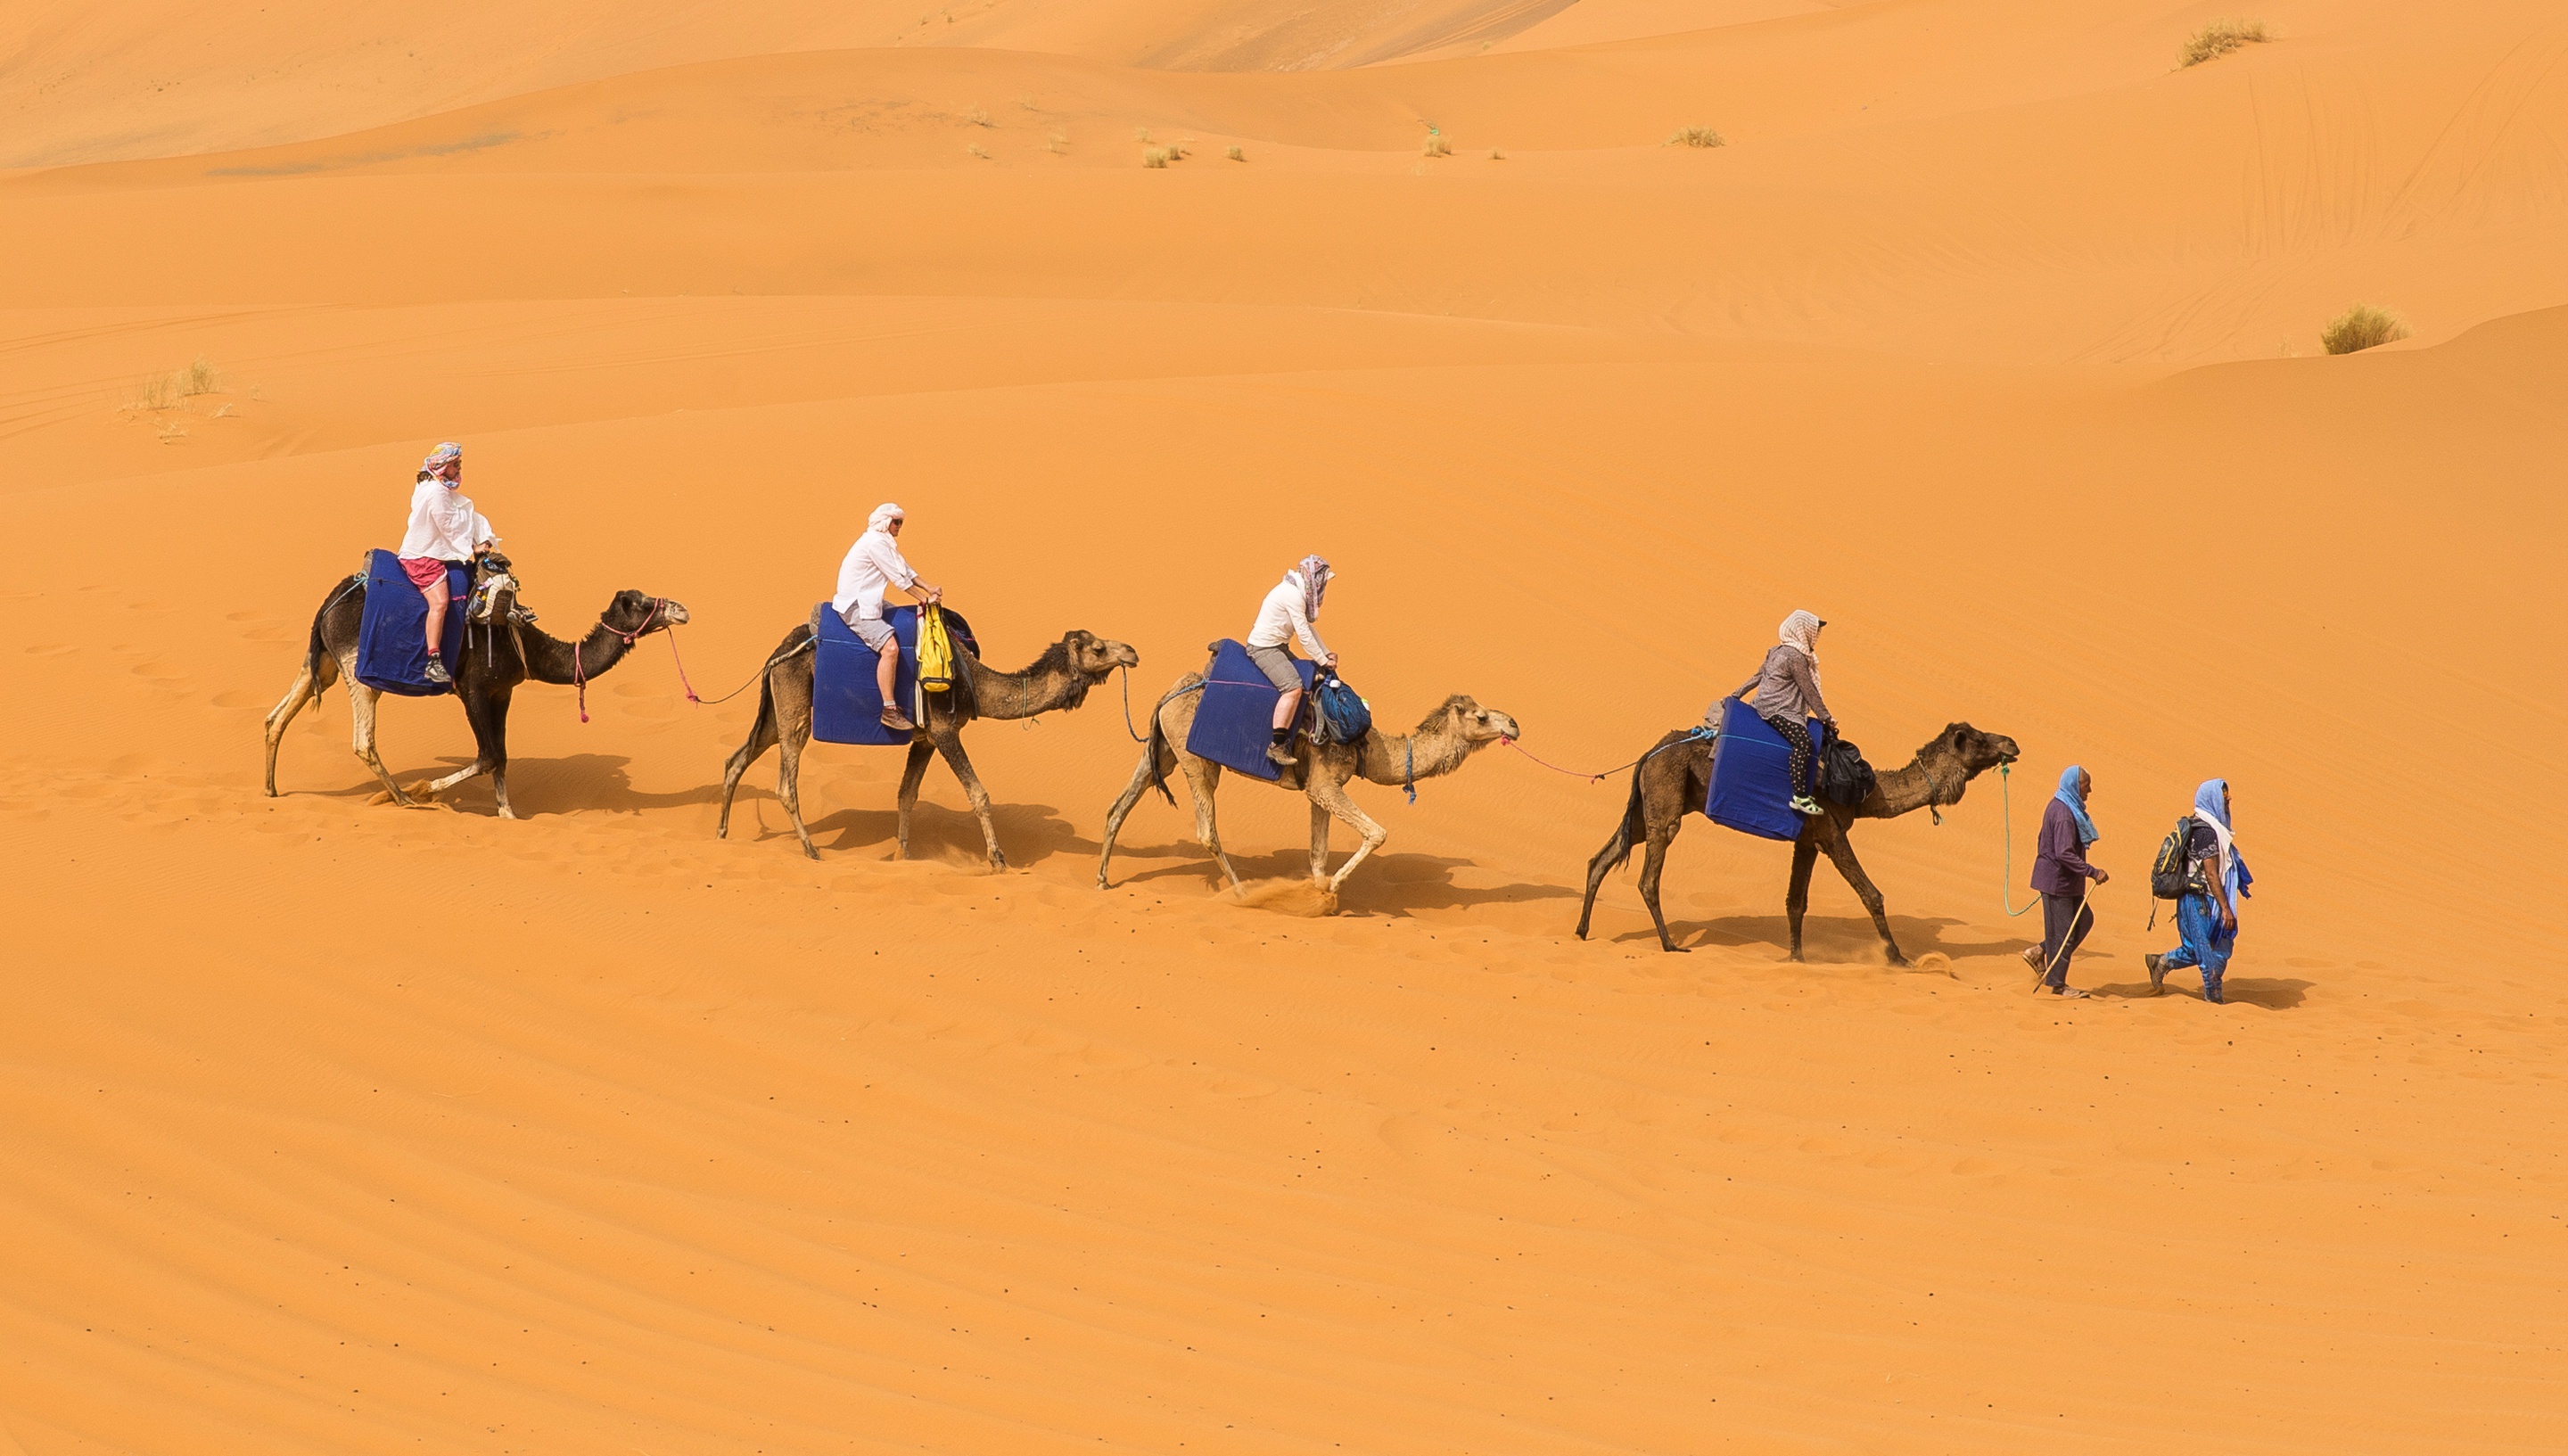 Новости караван. Мехари верблюд. Бедуин на верблюде. Караван с верблюдами в пустыне. Бедуин с верблюдом в пустыне.